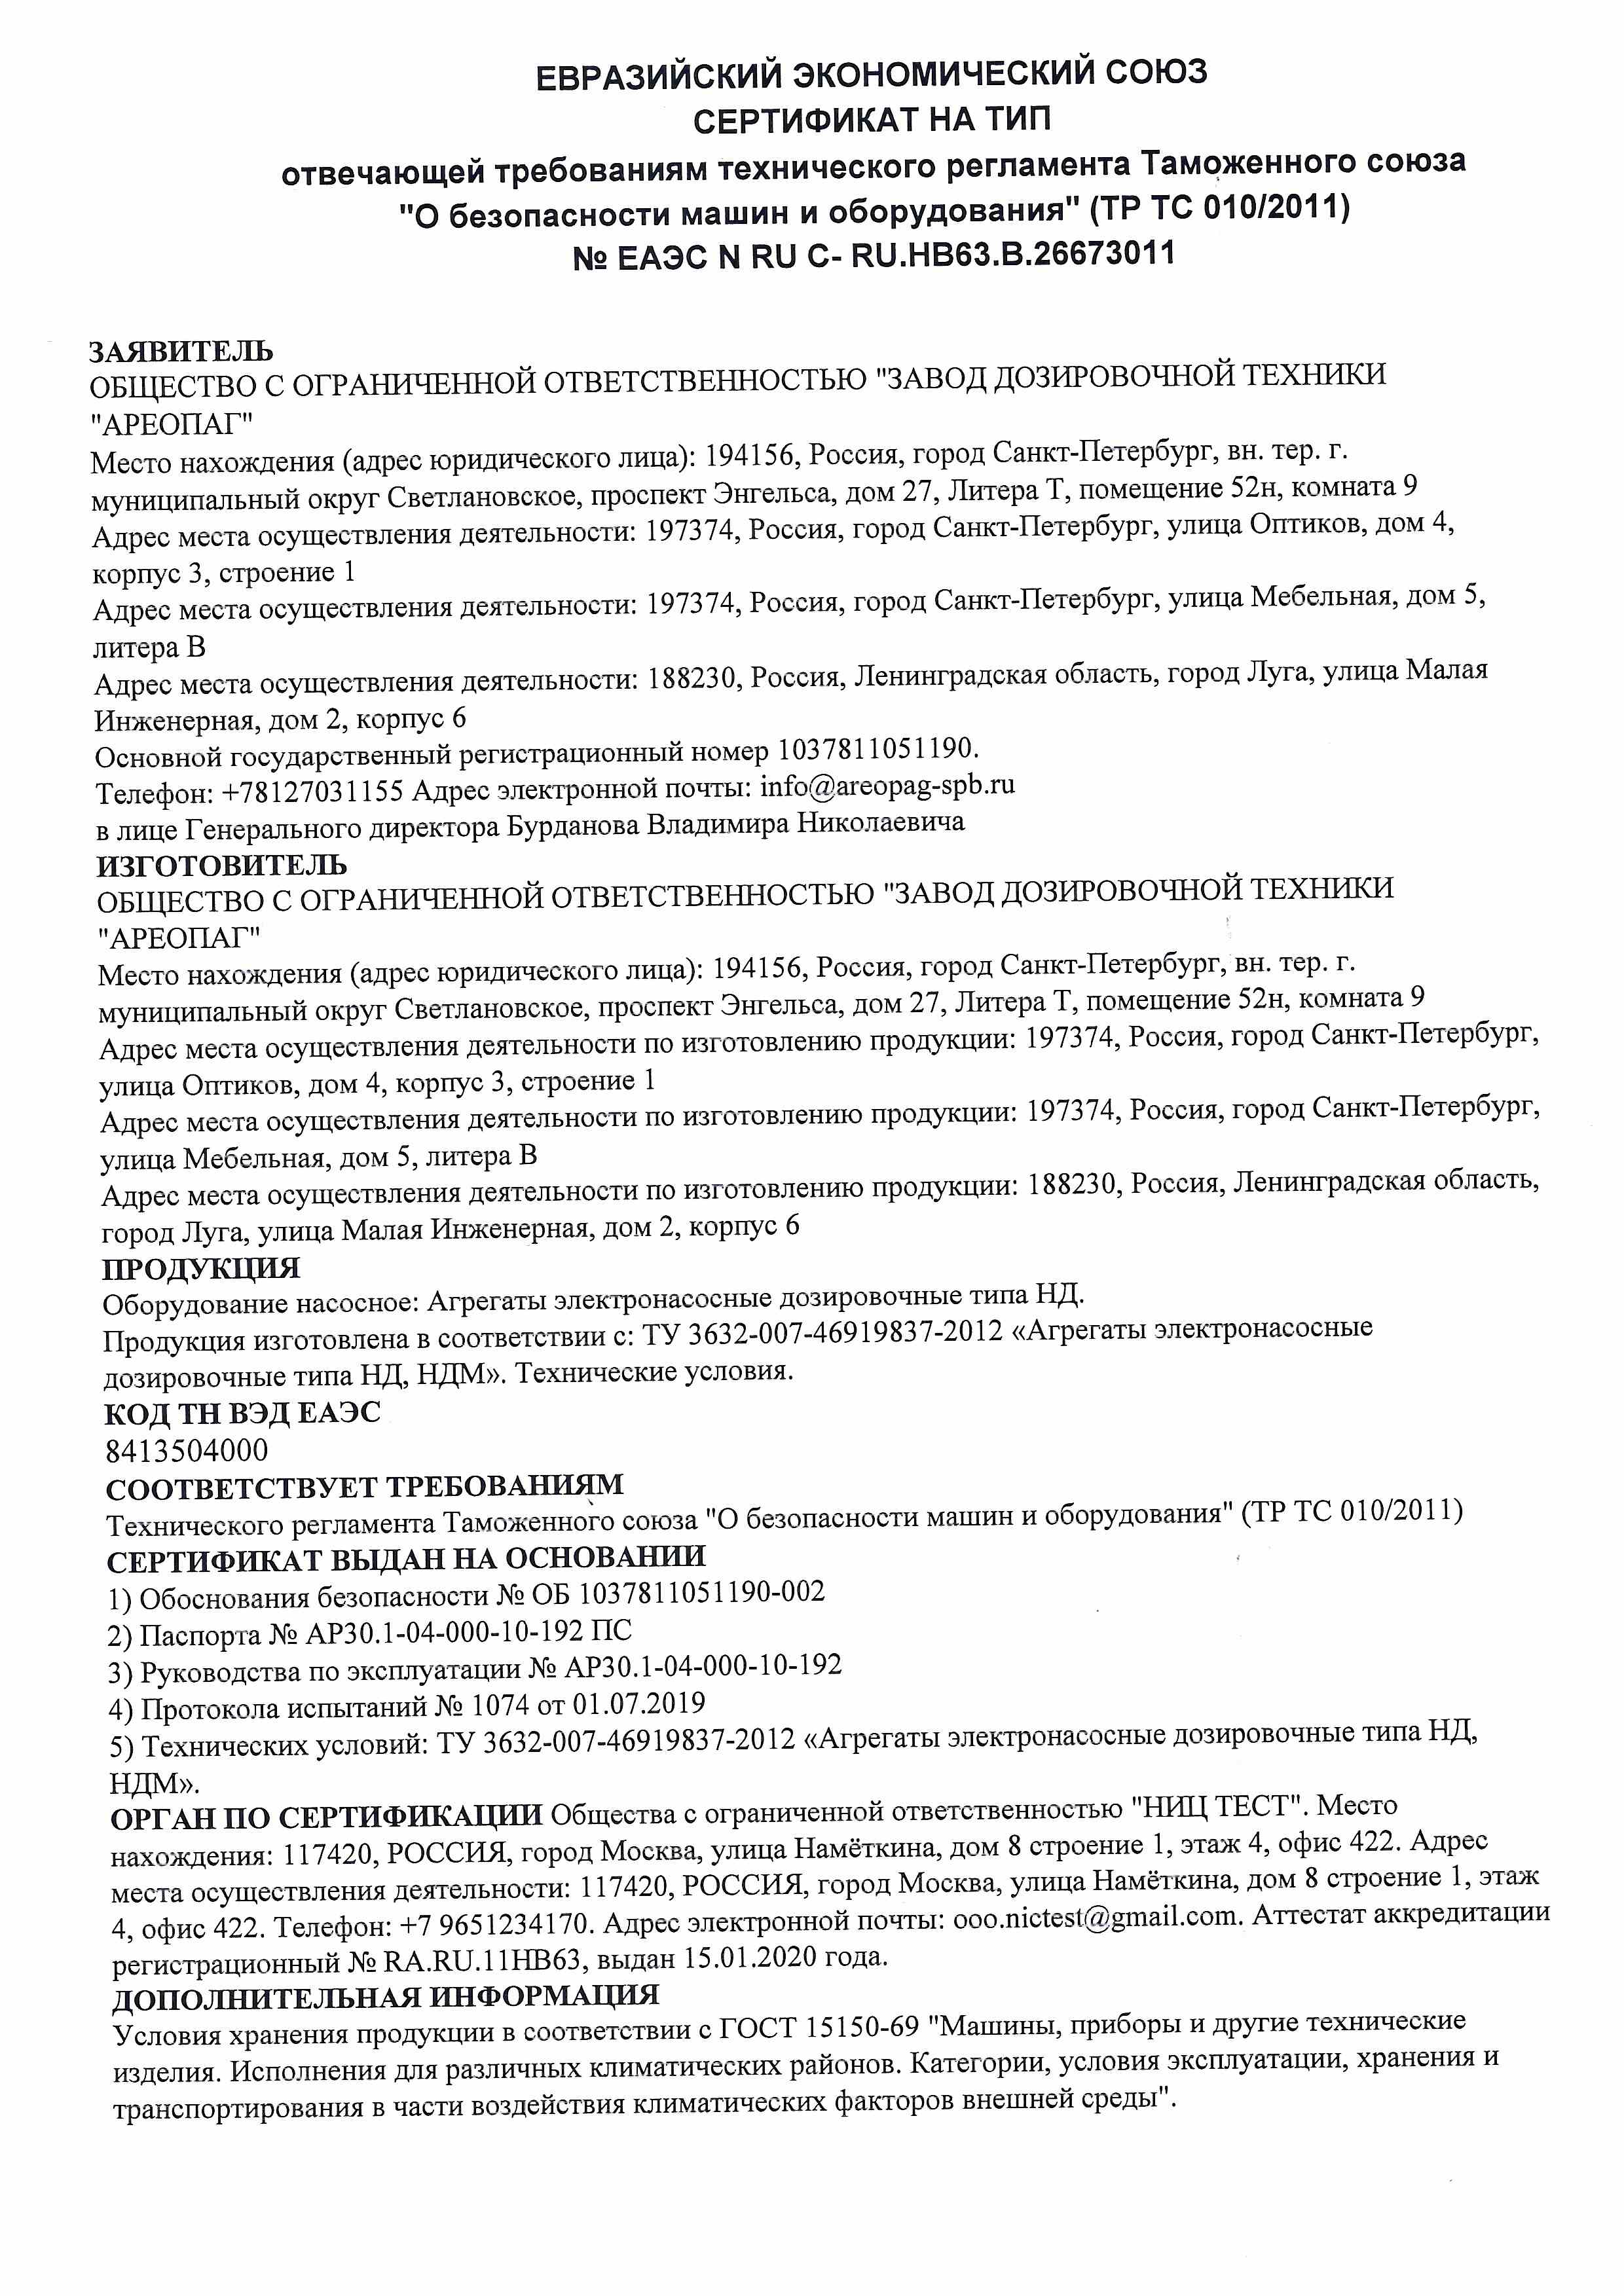 Сертификат на тип № ЕАЭС N RU С- RU.HB63.B.26673011. (ТР ТС 010/2011) Агрегаты электронасосные дозировочные типа НД